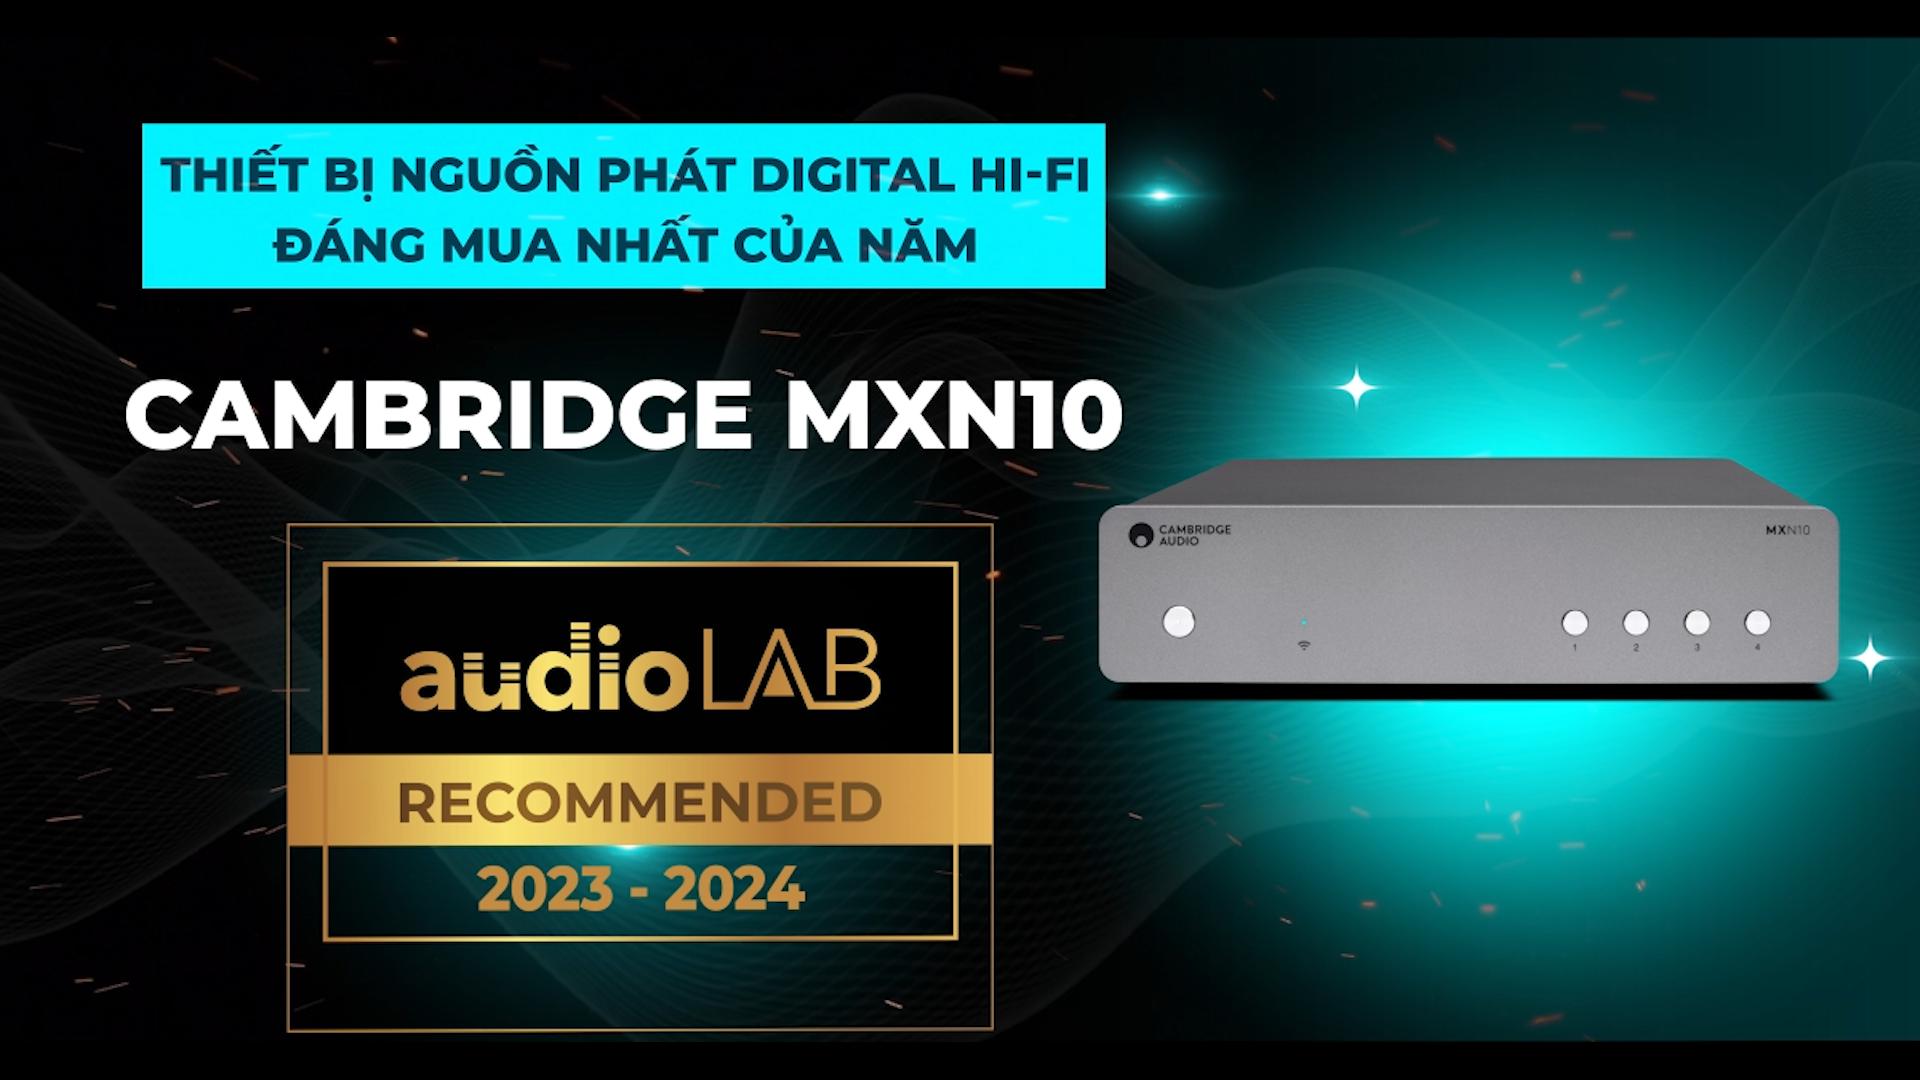 [Audio LAB Recommended] CAMBRIDGE MXN10 - Thiết bị nguồn phát Digital Hi-Fi đáng mua nhất năm 2023-2024